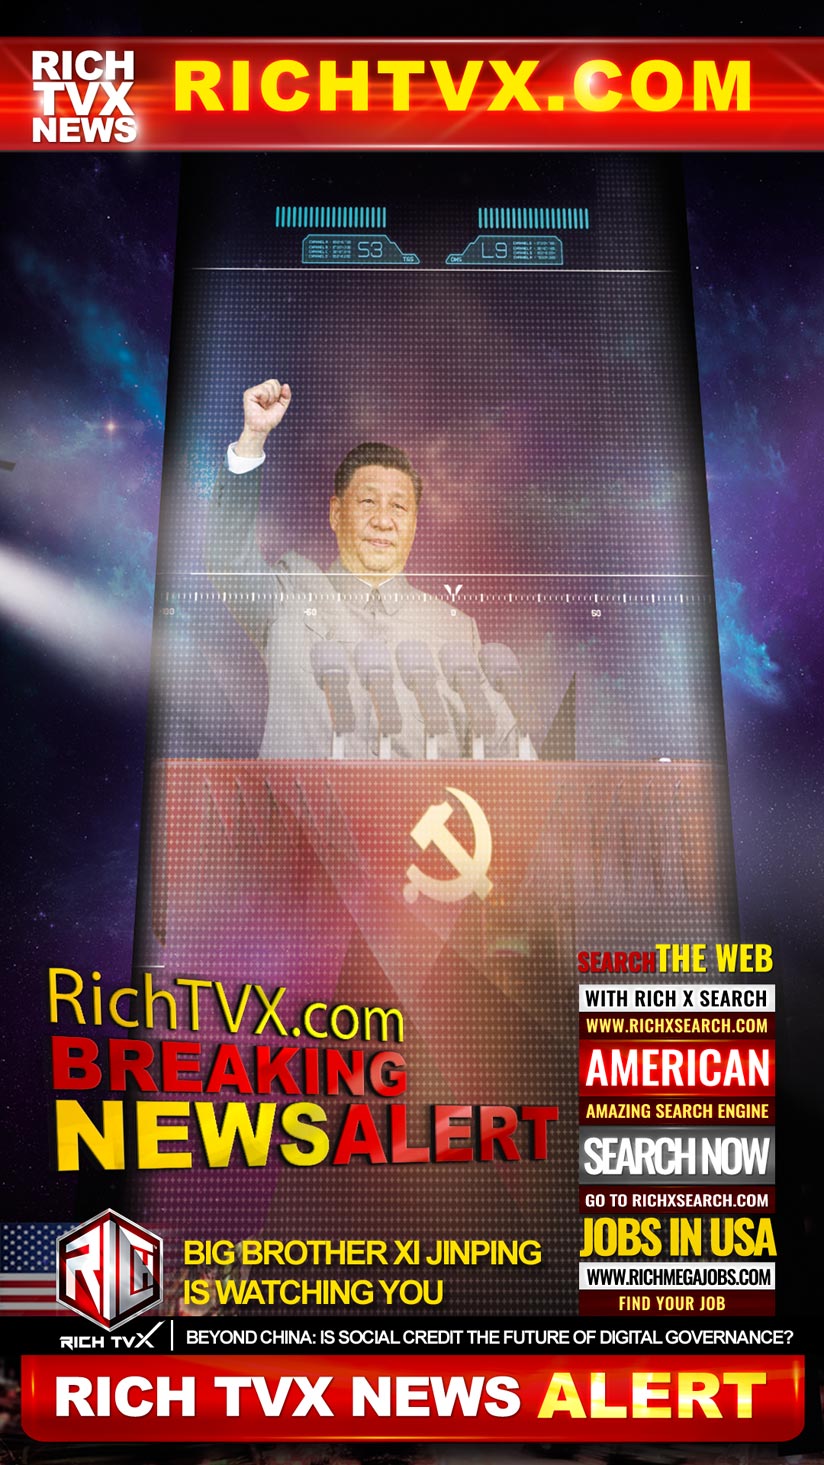 Big Brother Xi Jinping is watching you